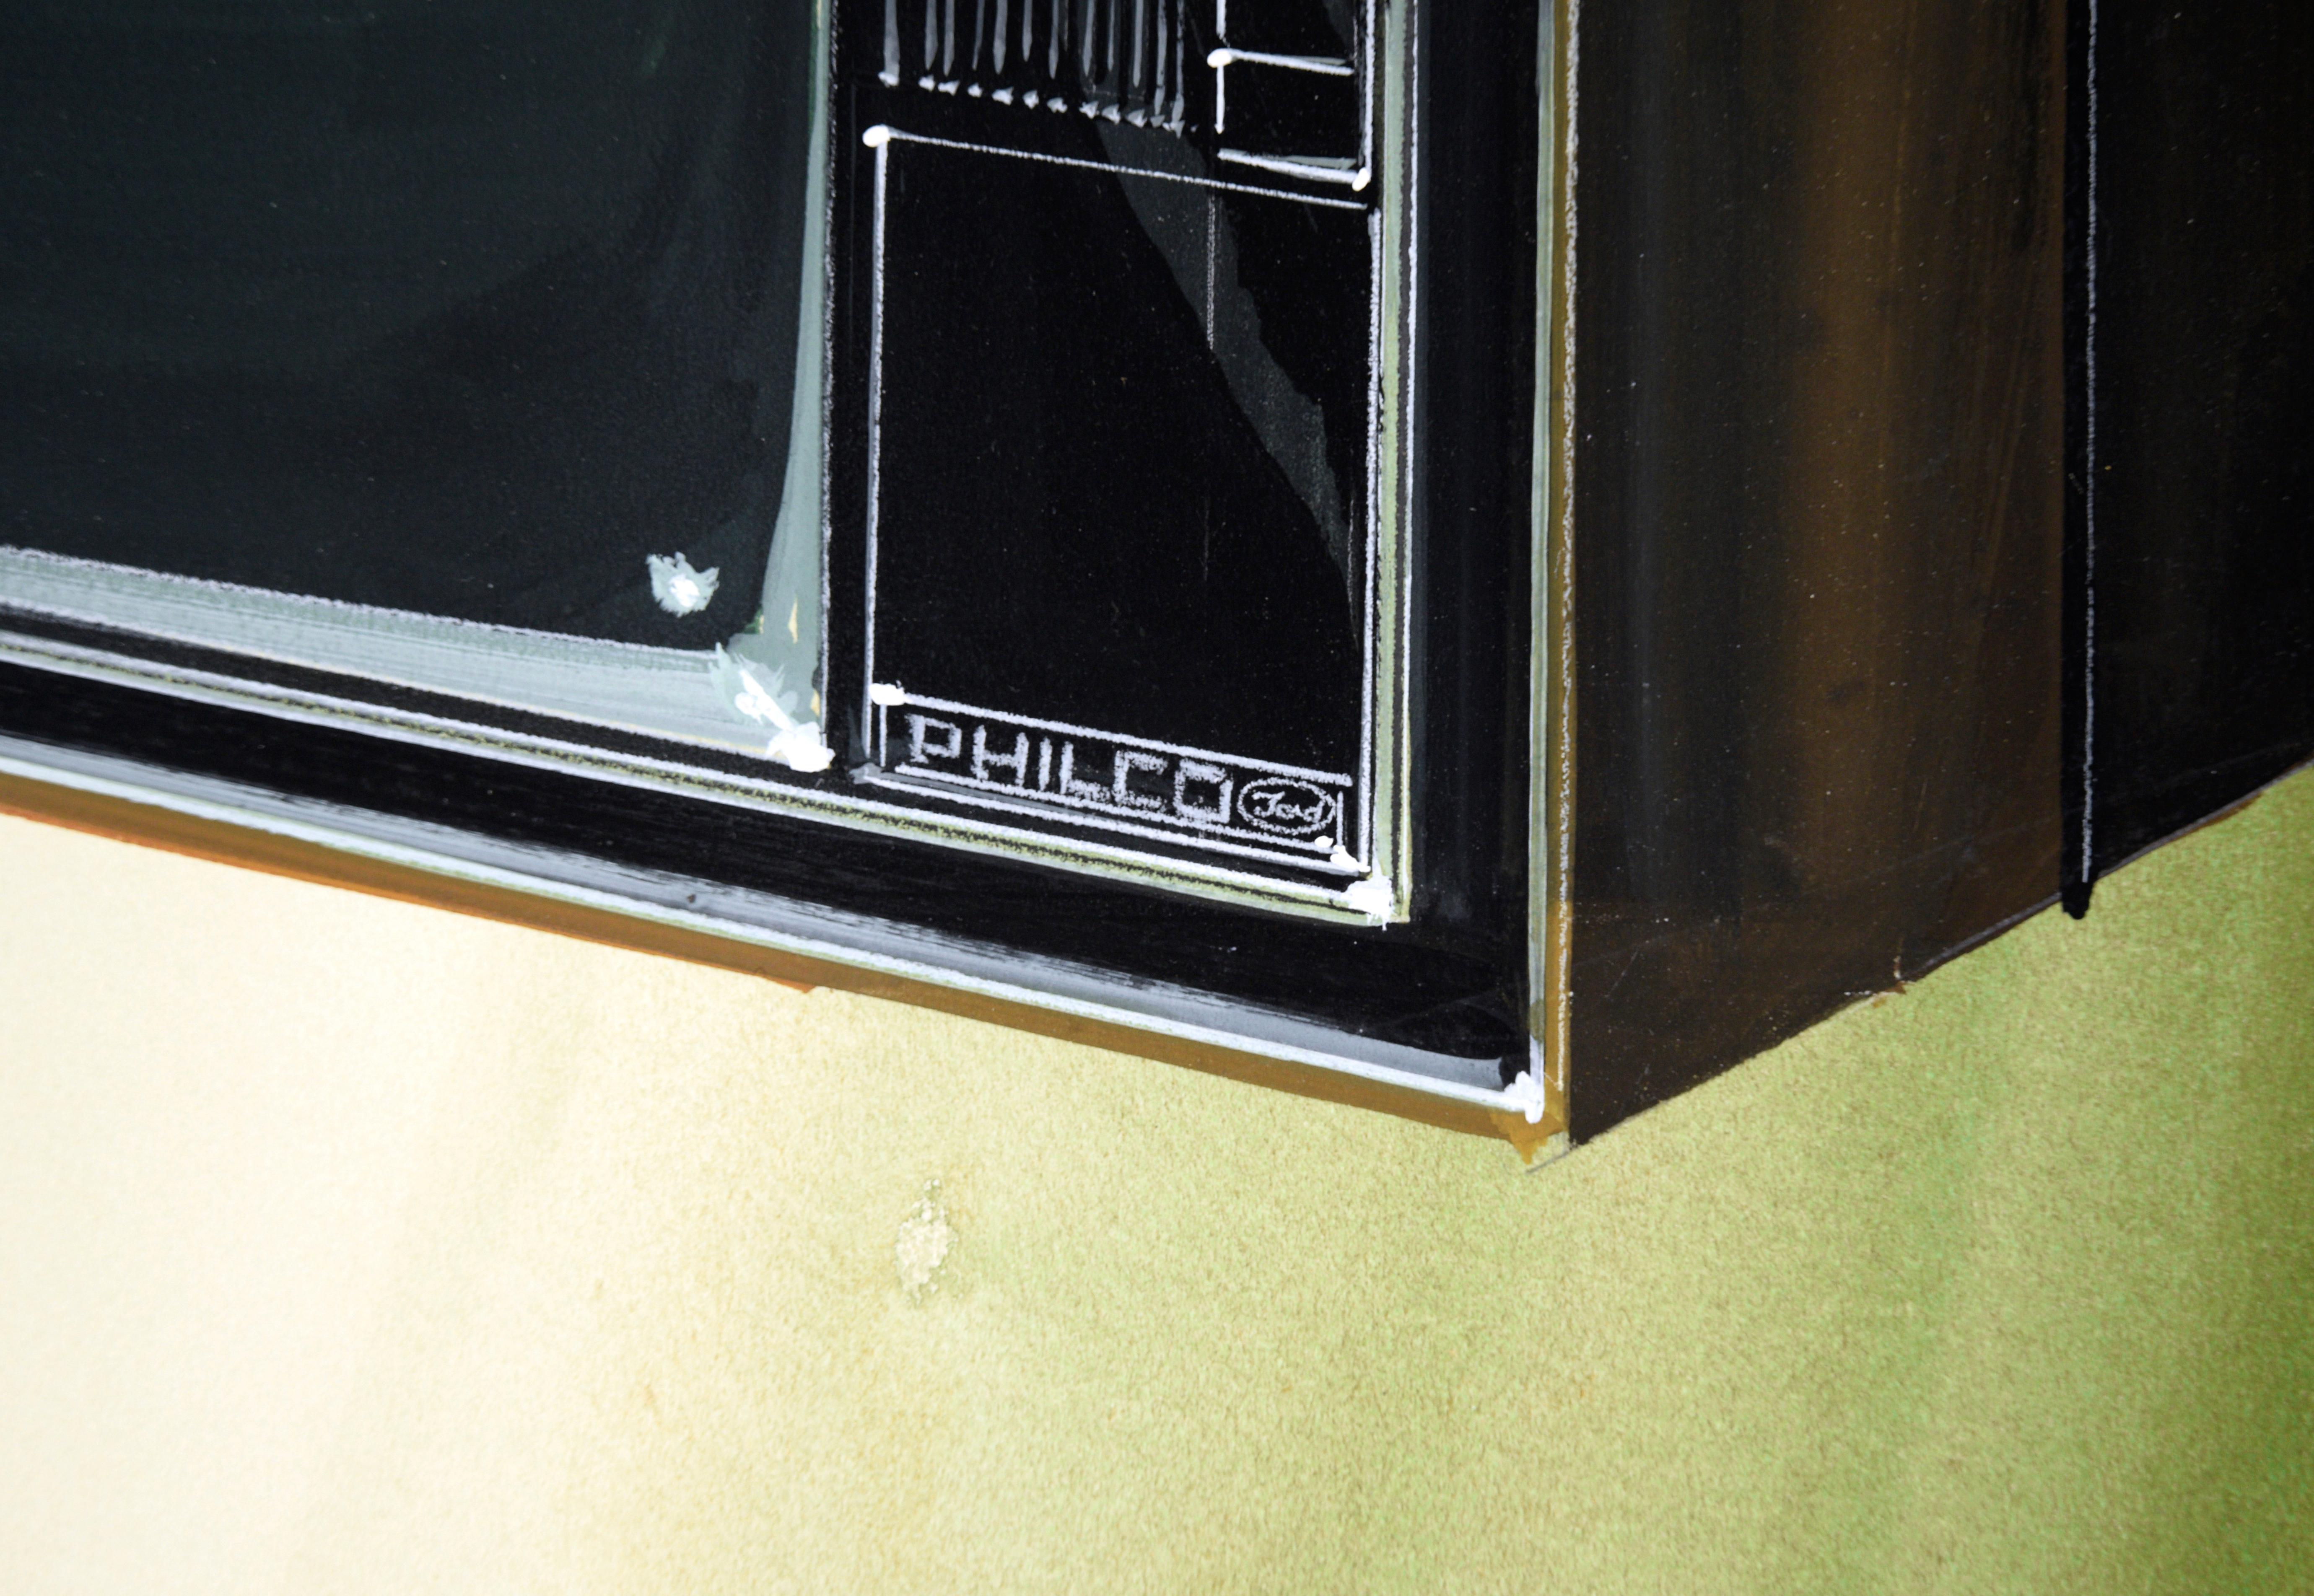 Illustration eines Philco-Ford-Fernsehgeräts in Designqualität von Edward T. Liljenwall (Amerikaner, 1943-2010). Der Fernseher ist fachmännisch vor einem olivgrünen Hintergrund mit Farbverläufen dargestellt, mit weichen Schattierungen und